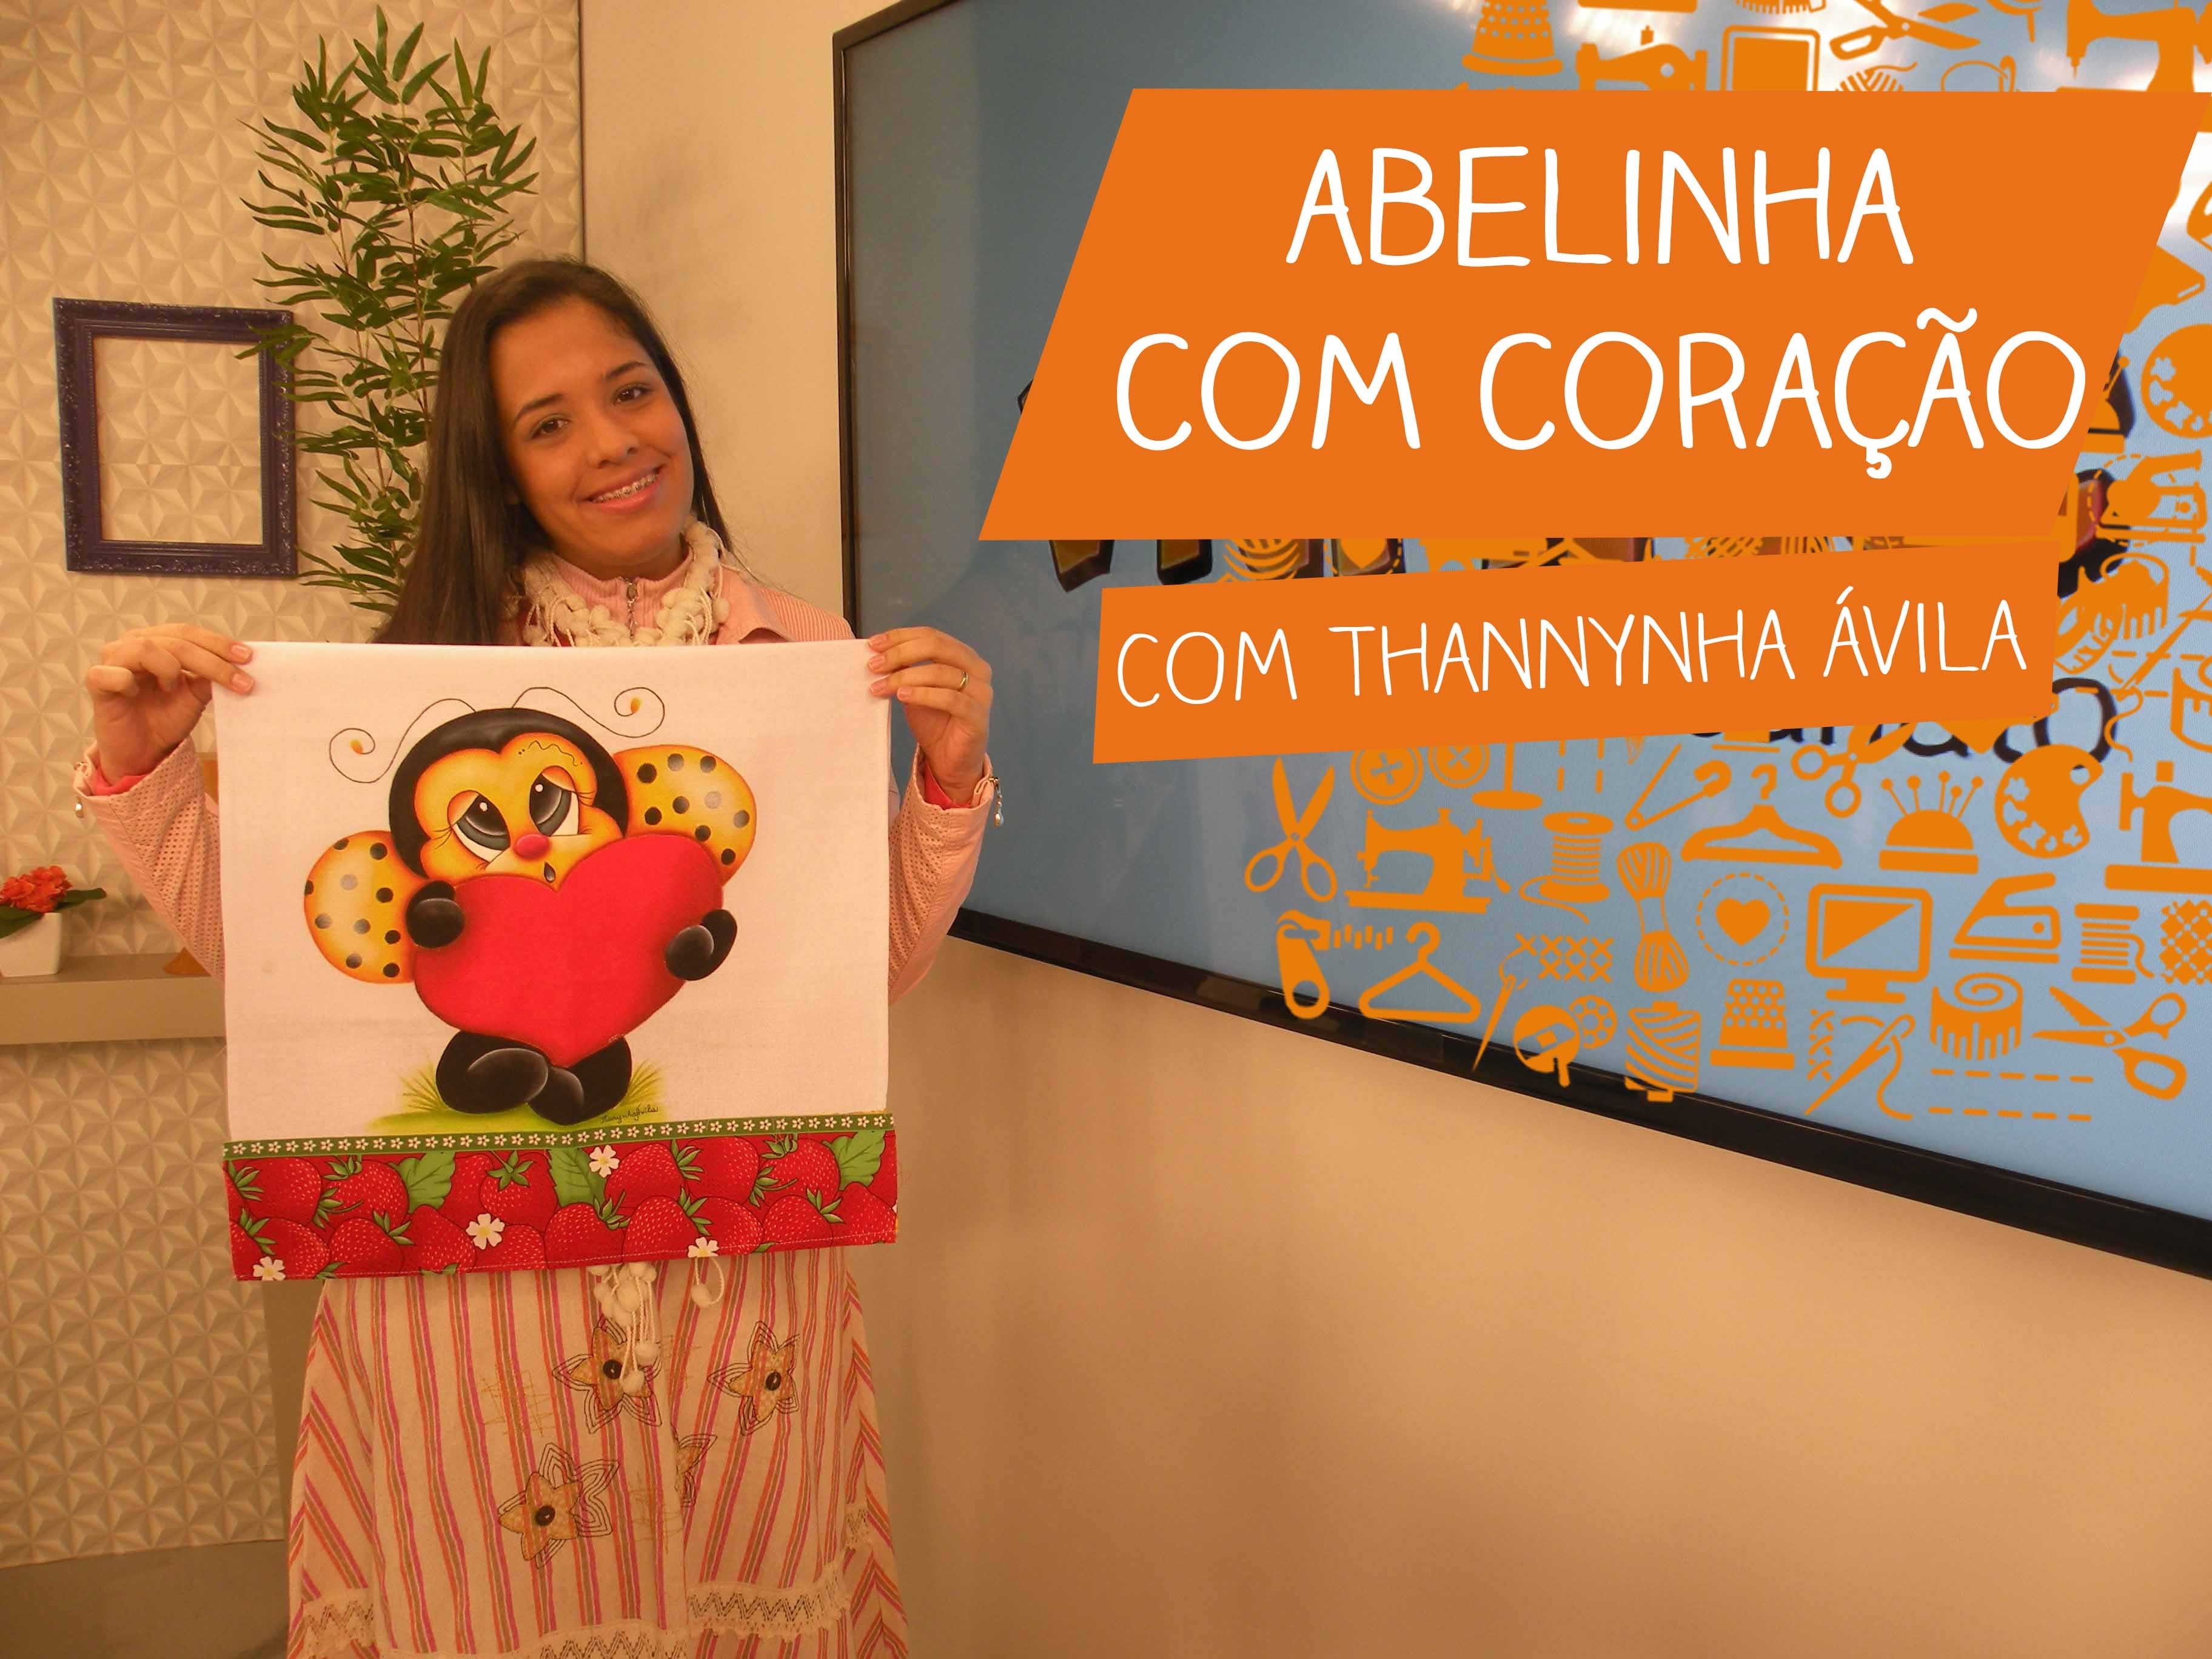 Abelinha com Coração com Thanynha Ávila | Vitrine do Artesanato na TV